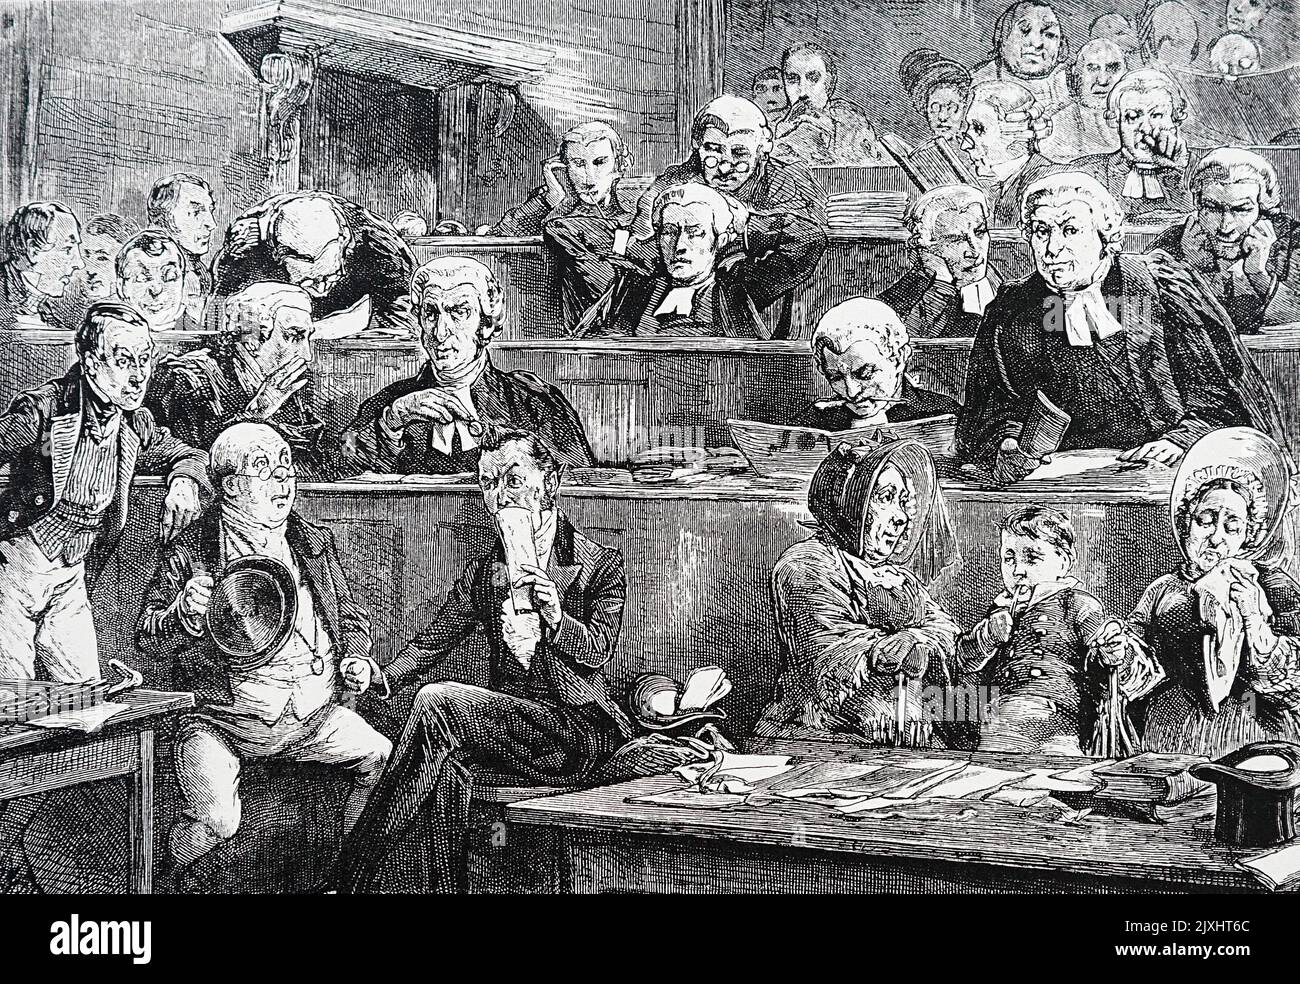 Illustration des Prozesses zwischen Bardell und Pickwick für die Pickwick Papers von Charles Dickens (1812-1870), einem englischen Schriftsteller und Sozialkritiker. Illustriert von T. W. Wilson (1851-1912), einem englischen Illustrator. Datiert aus dem 19.. Jahrhundert Stockfoto